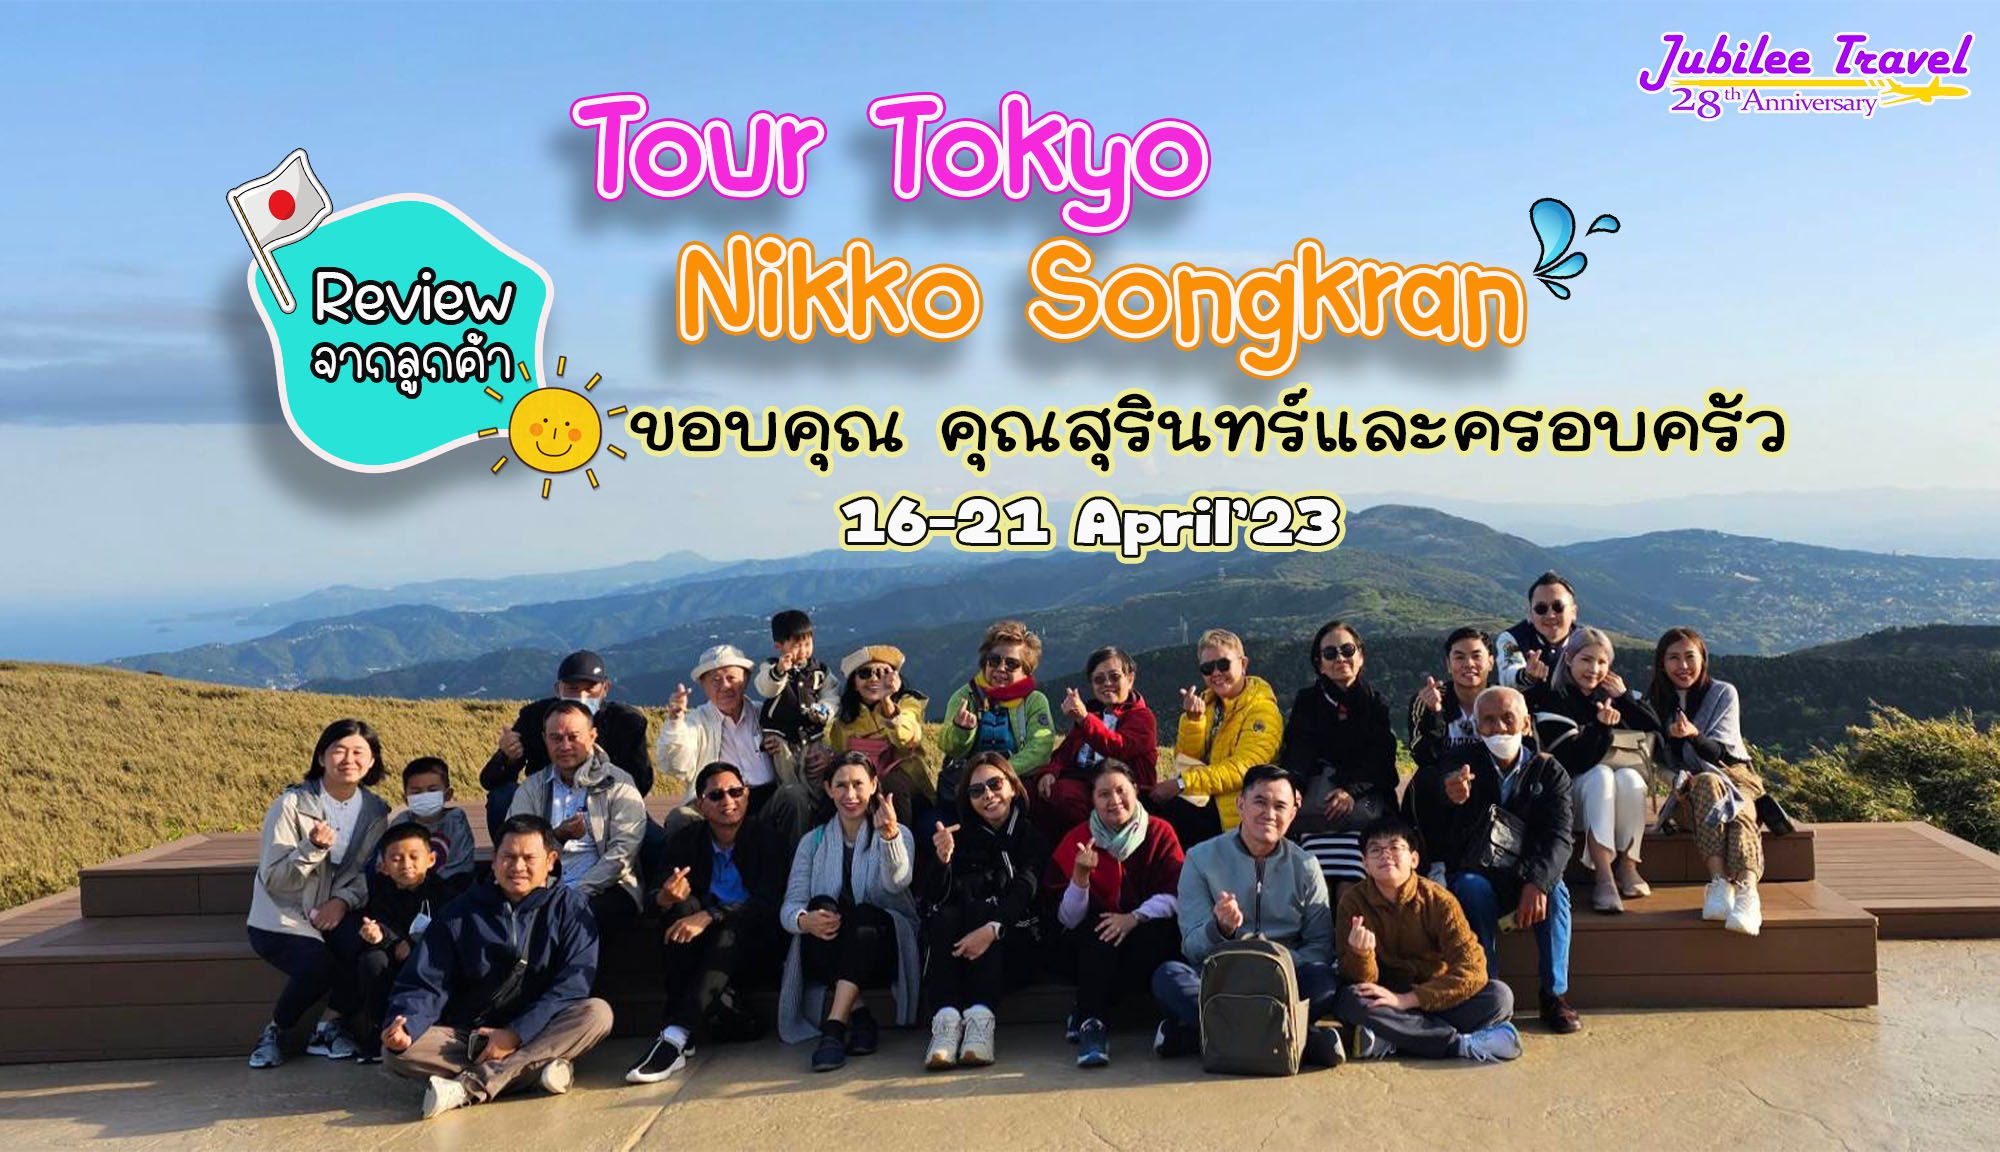 รีวิว จากลูกค้าขอบคุณ คุณสุรินทร์ และครอบครัว Tour Tokyo Nikko Songkran 16-21 April’23